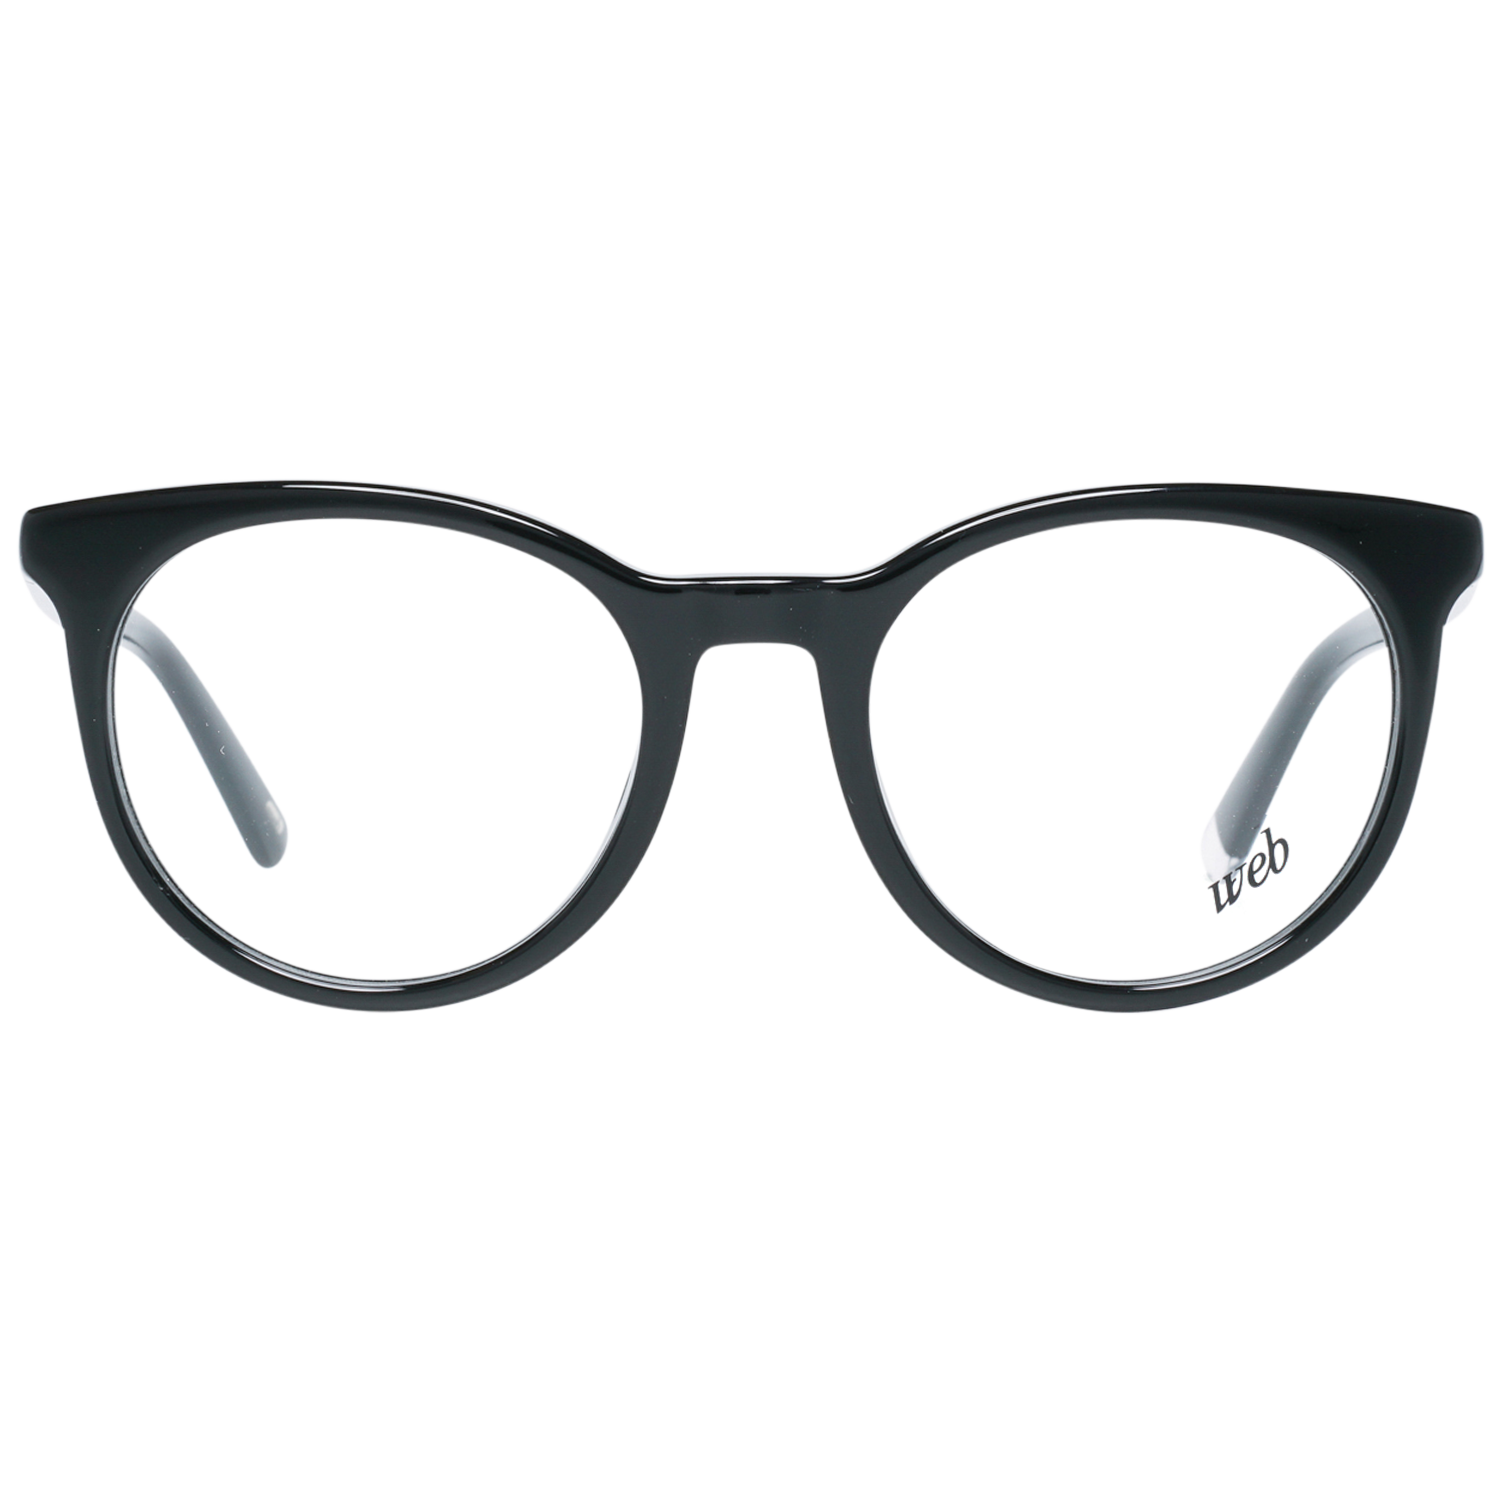 Web Frames Web Glasses Optical Frame WE5251 001 49 Eyeglasses Eyewear UK USA Australia 